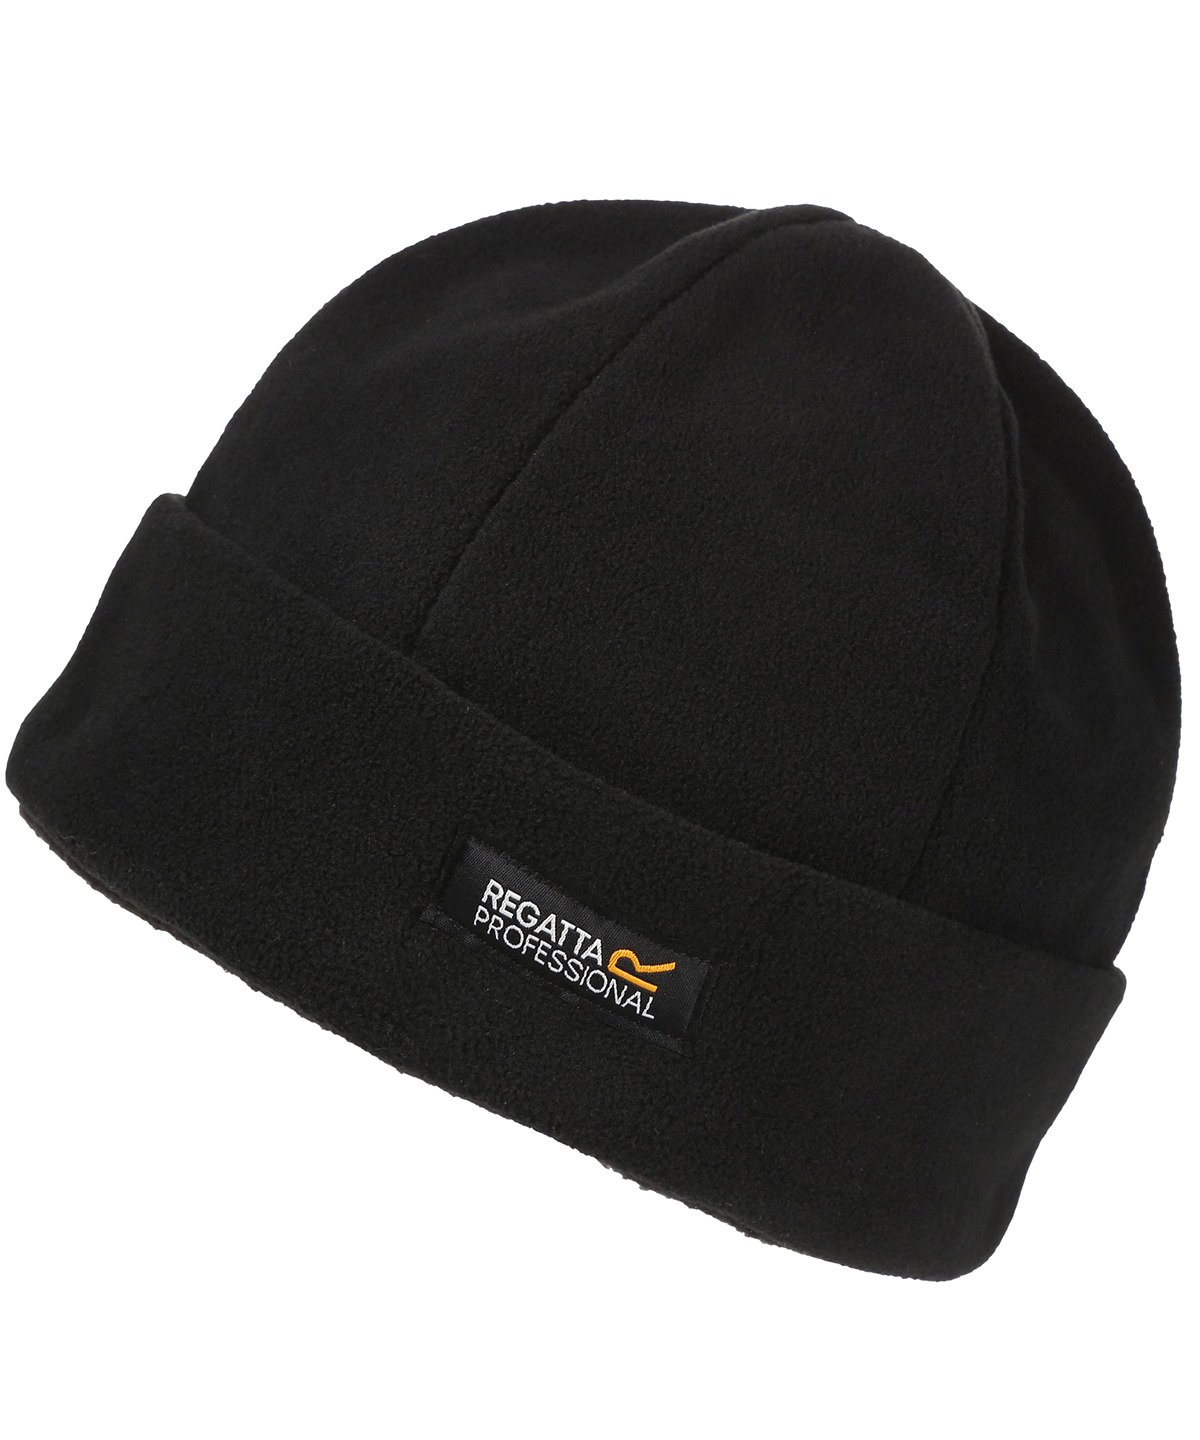 Pro docker hat - Corporatewear UK